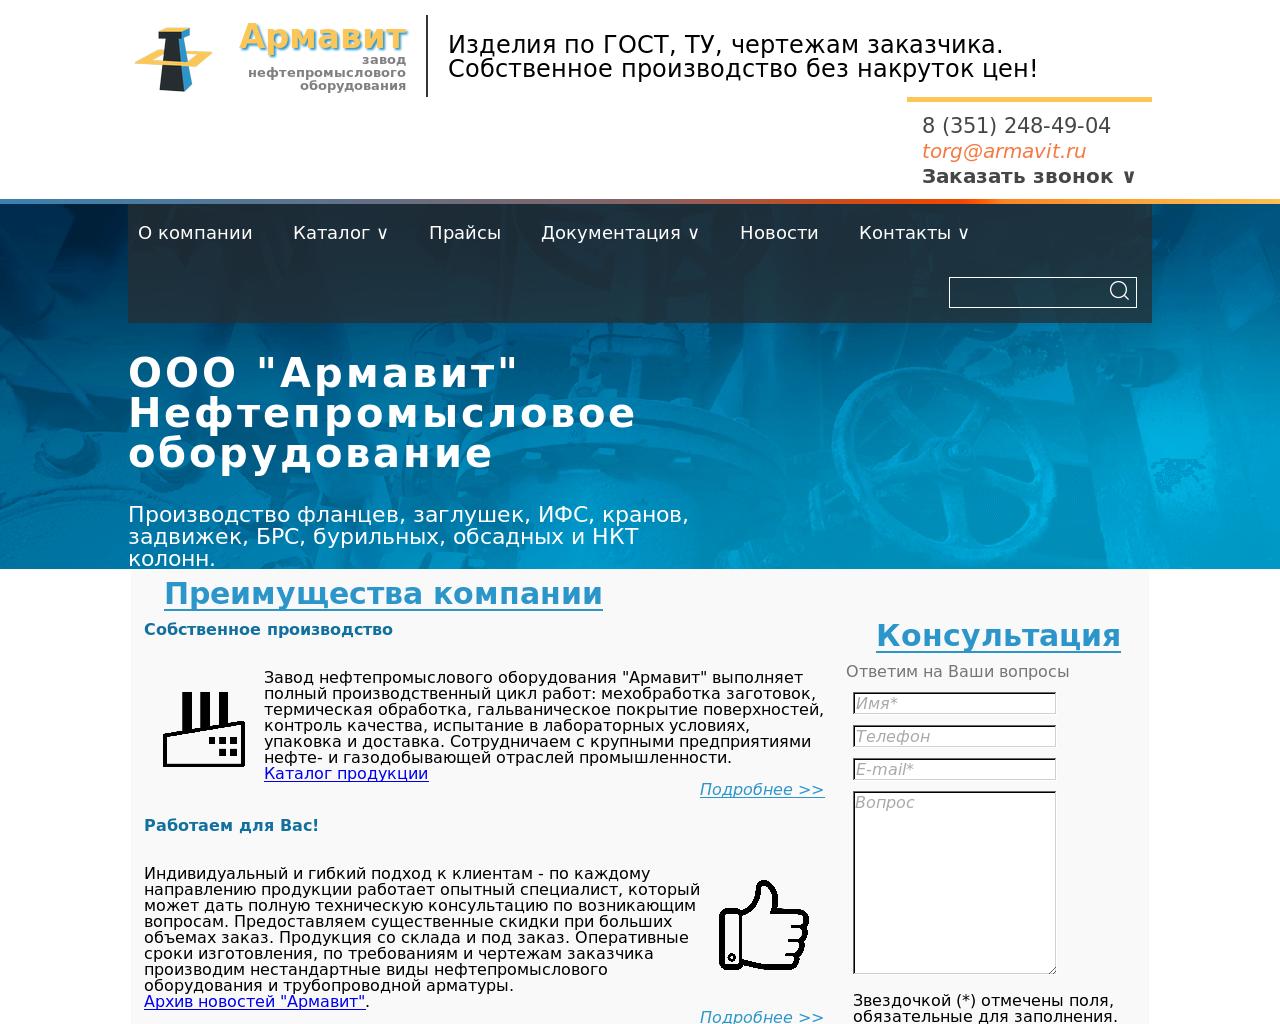 Изображение сайта armavit.ru в разрешении 1280x1024